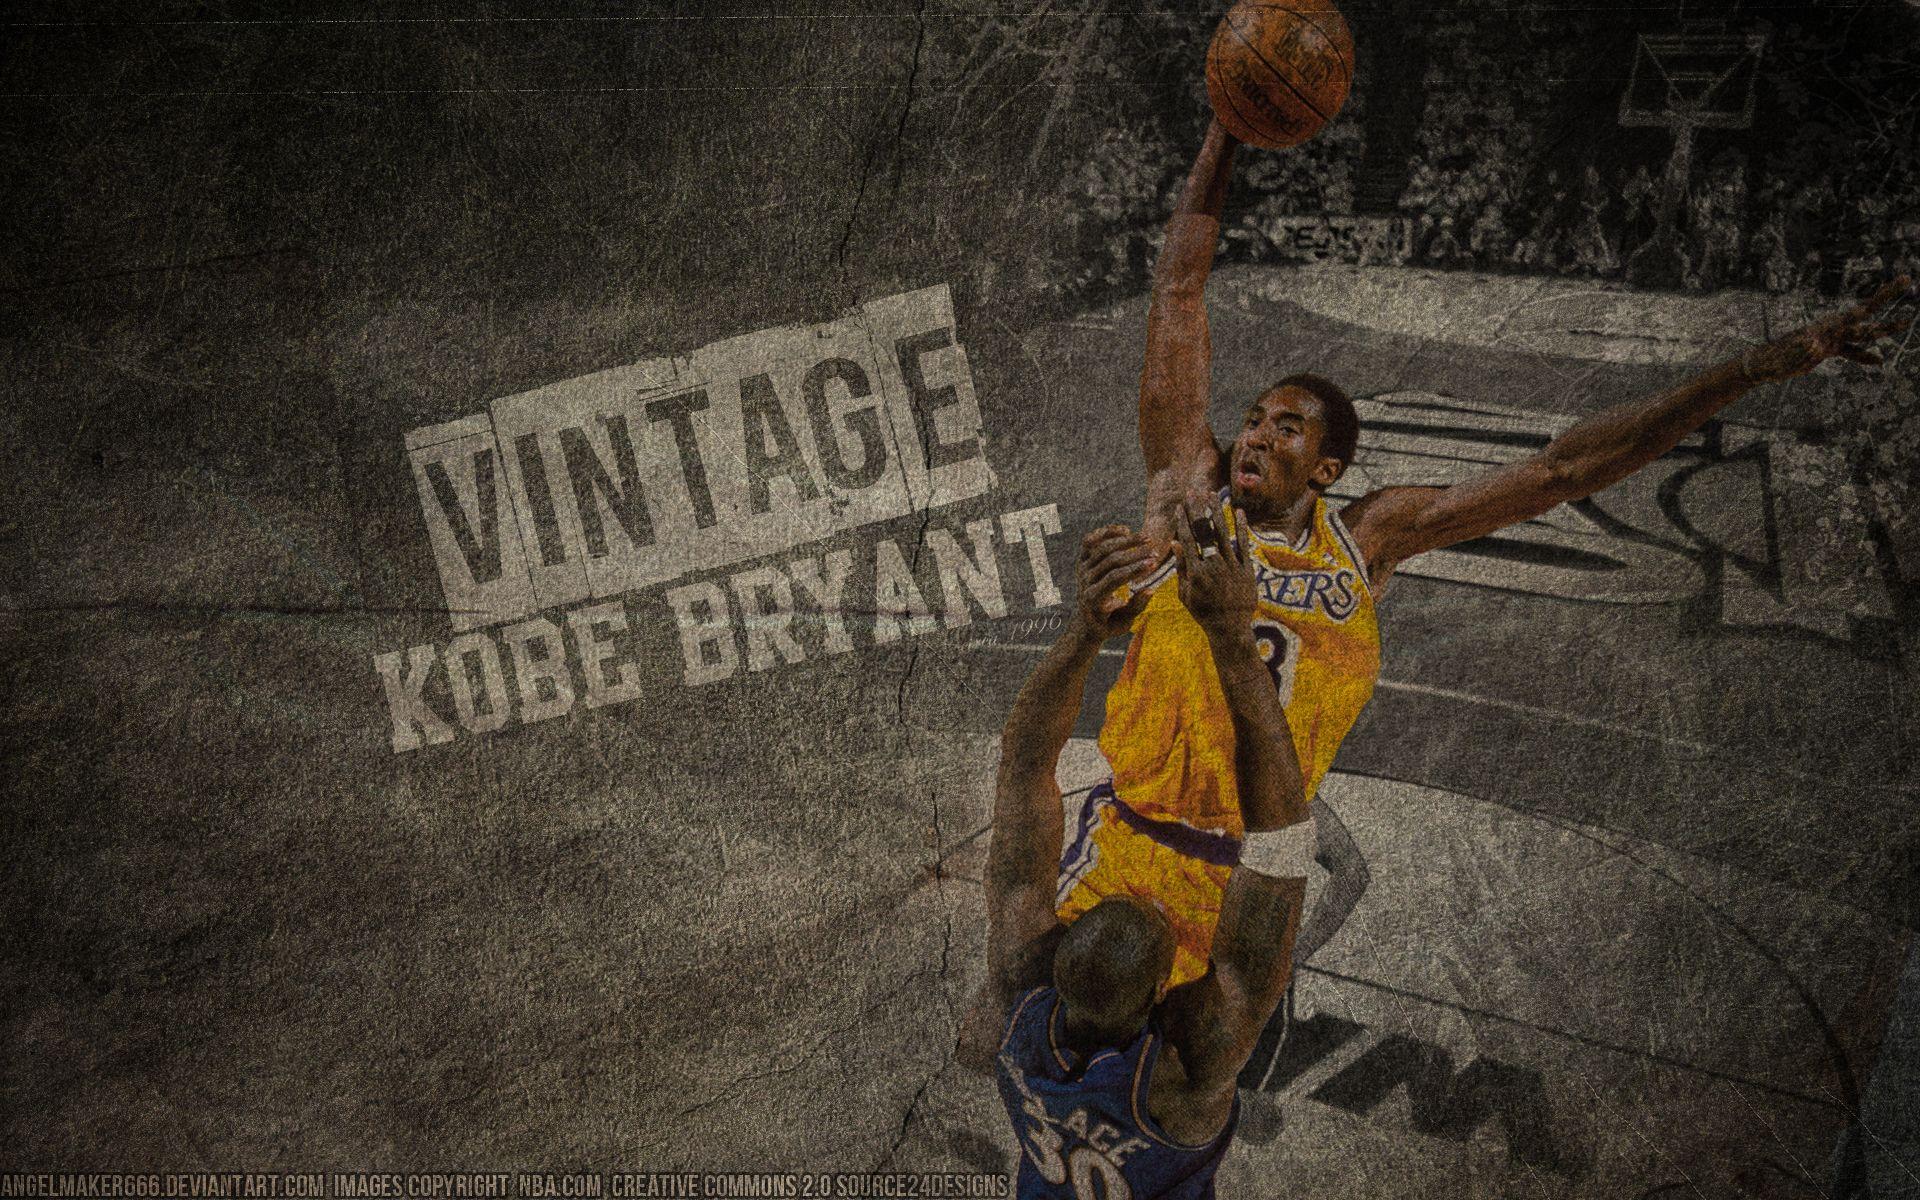 Vintage Kobe Bryant Wallpaper. Kobe bryant wallpaper, Shaq and kobe, Kobe bryant